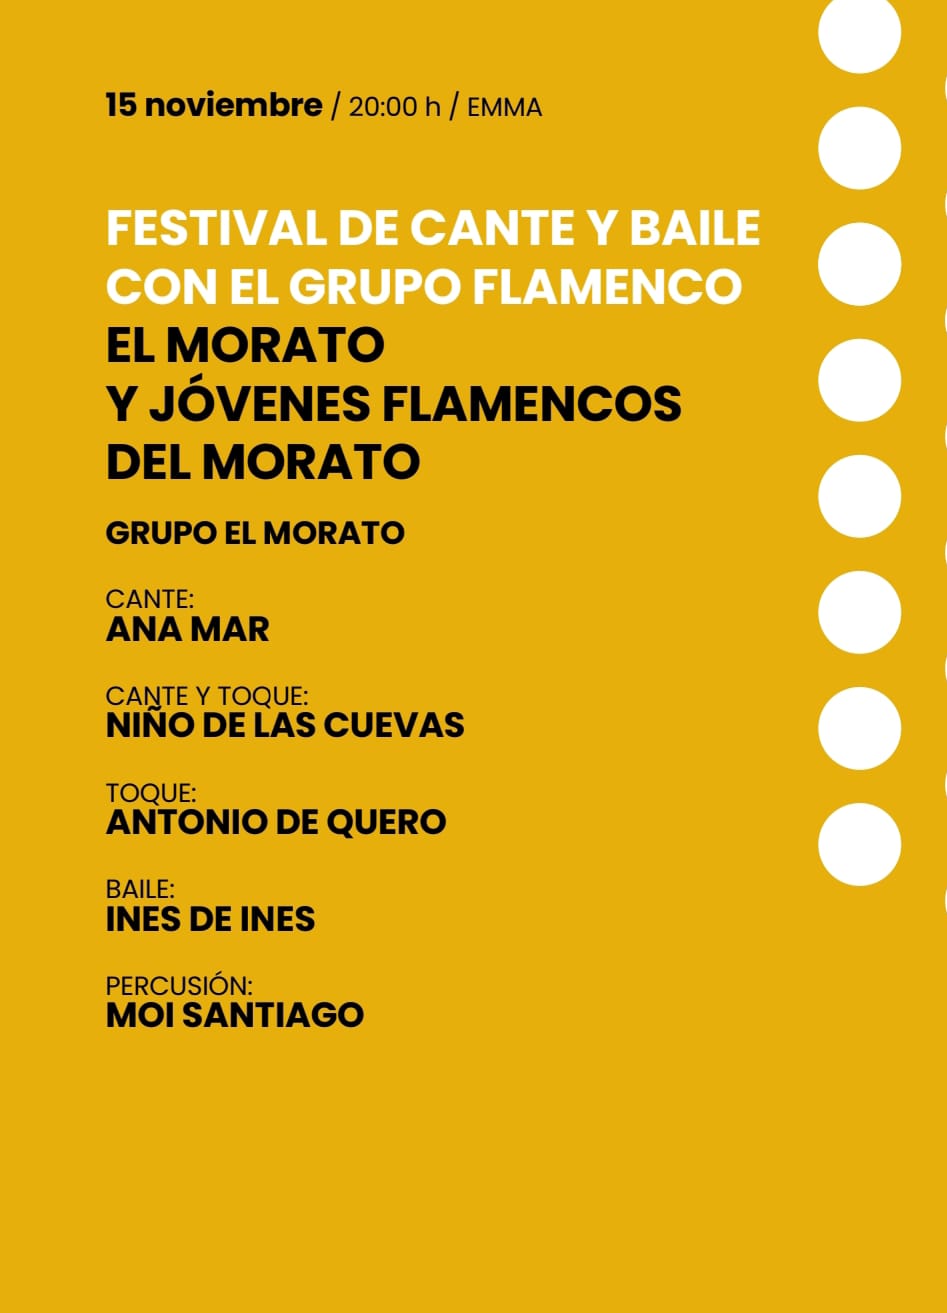 Festival de Cante y Baile con el grupo flamenco